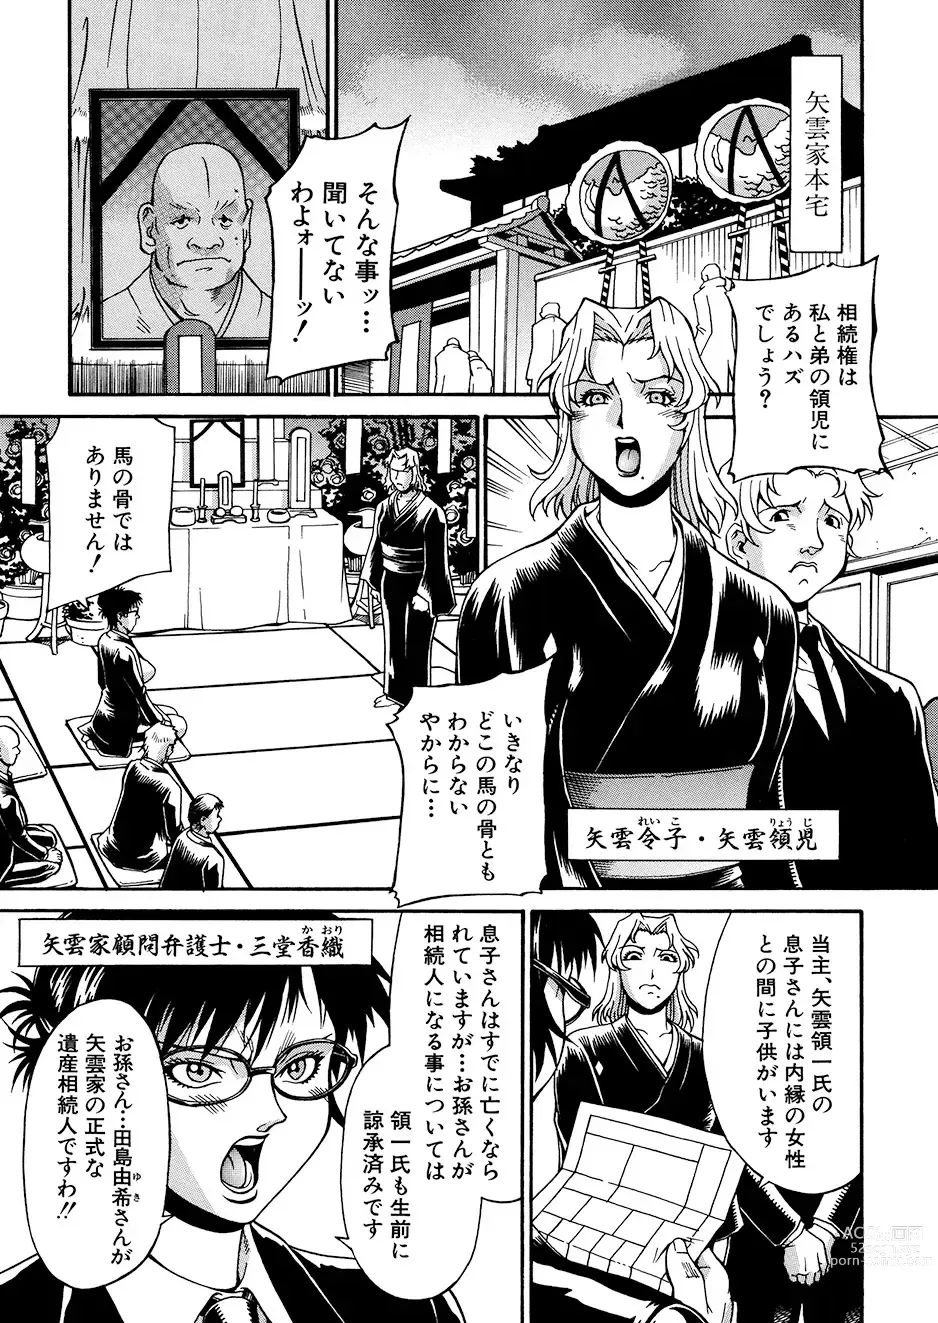 Page 24 of manga Mechiku